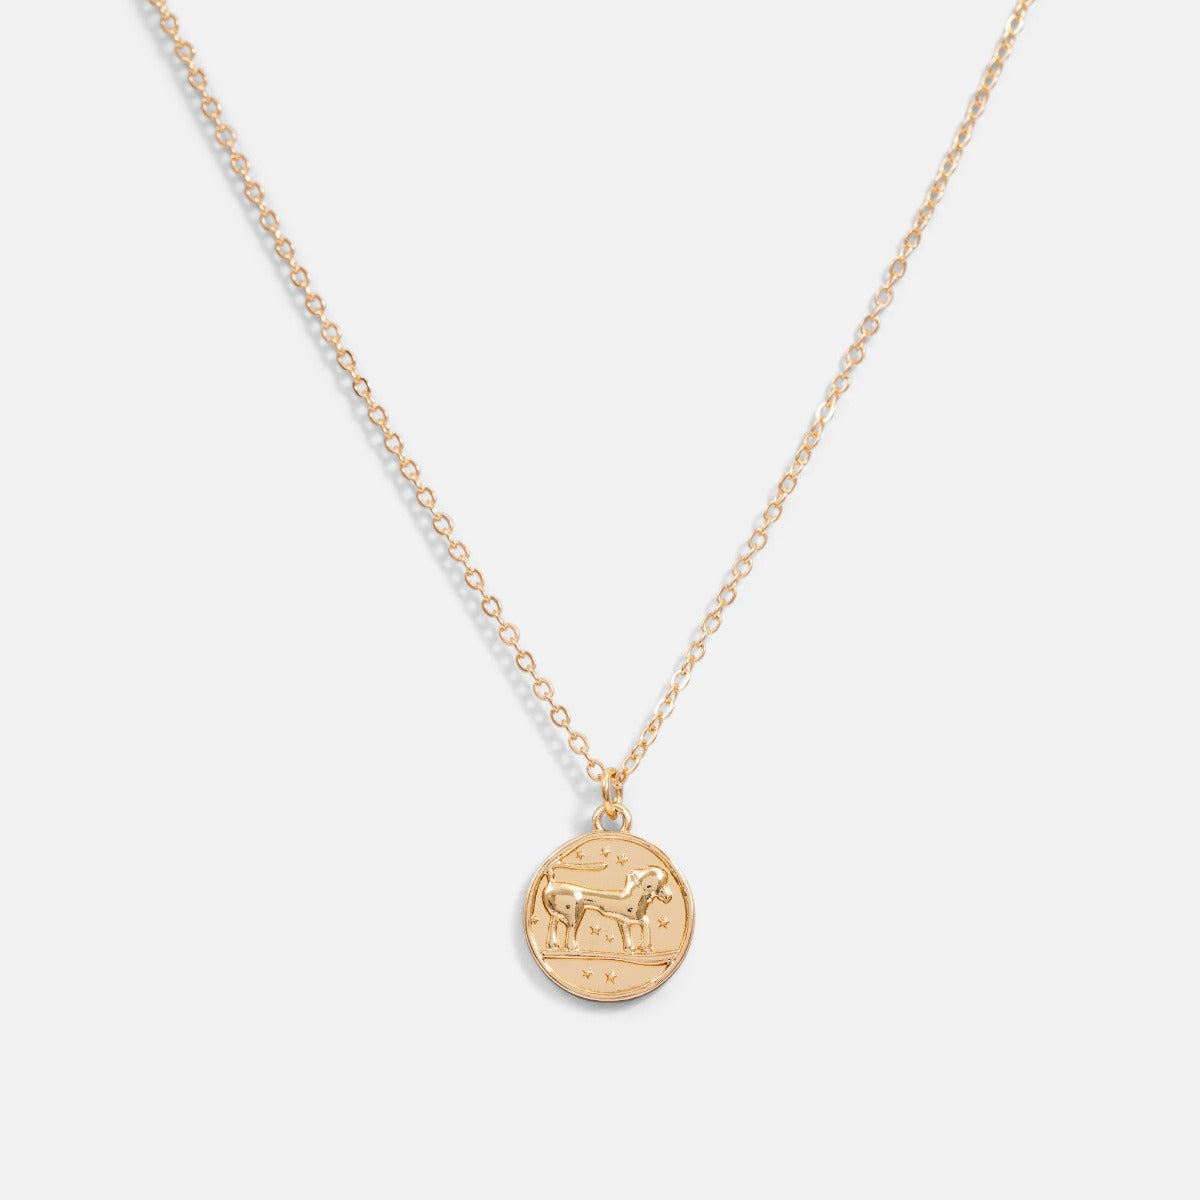 Golden pendant astrological sign "leo"